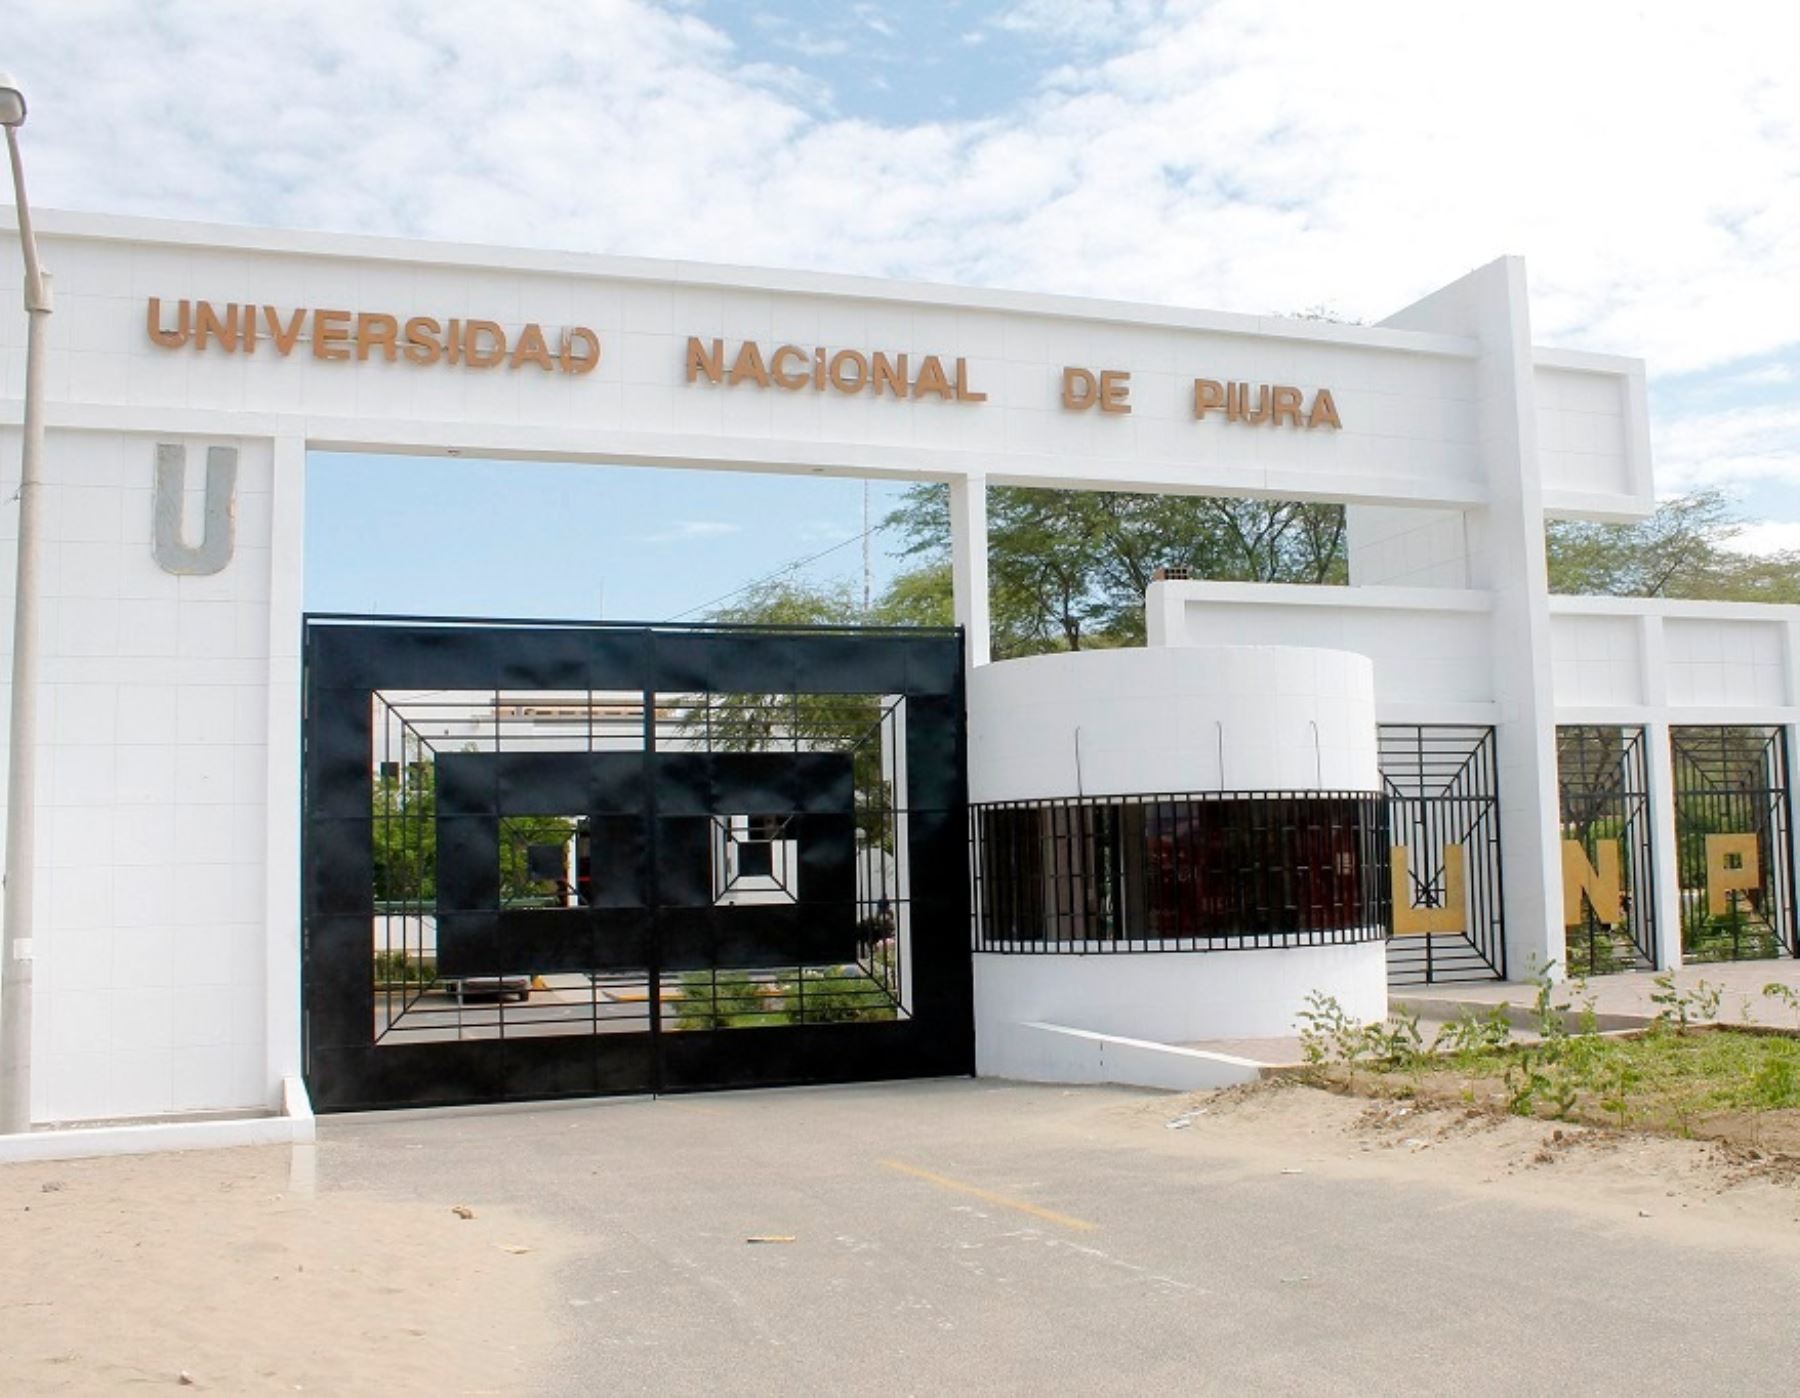 El Ministerio de Educación apoyará la creación de una filial de la Universidad Nacional de Piura en Paita, ciudad que no cuenta con oferta universitaria.